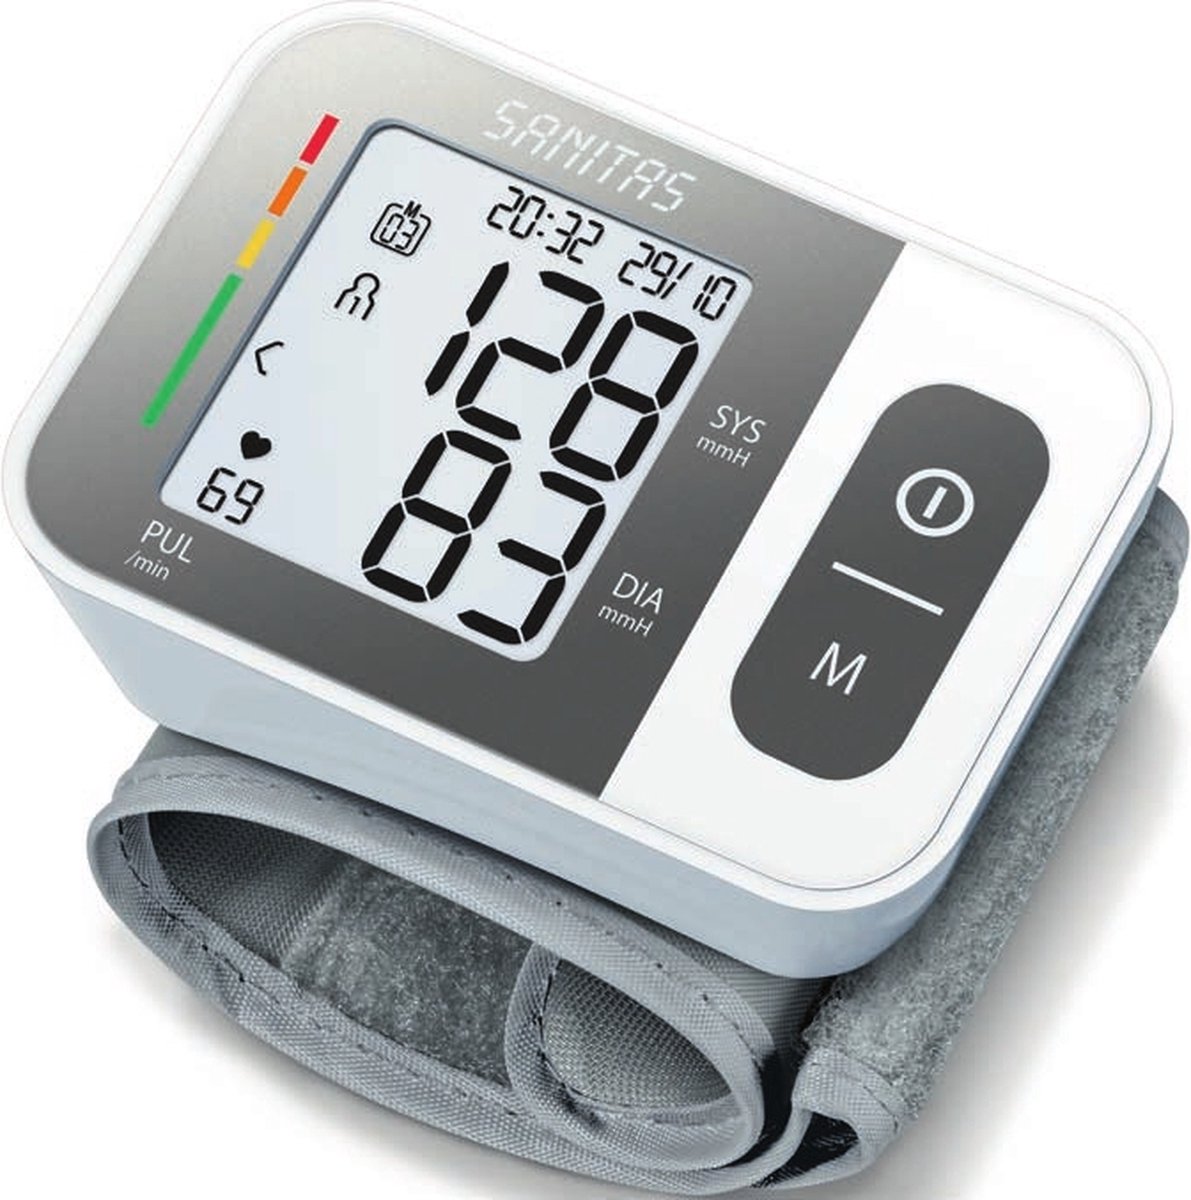 Sanitas SBC 15 Bloeddrukmeter pols - Hartslagmeter - Onregelmatige hartslag - Risico-indicator - 2 Gebruikersgeheugen - Manchet pols 14-19,5 cm - Incl. batterijen - 2 Jaar garantie